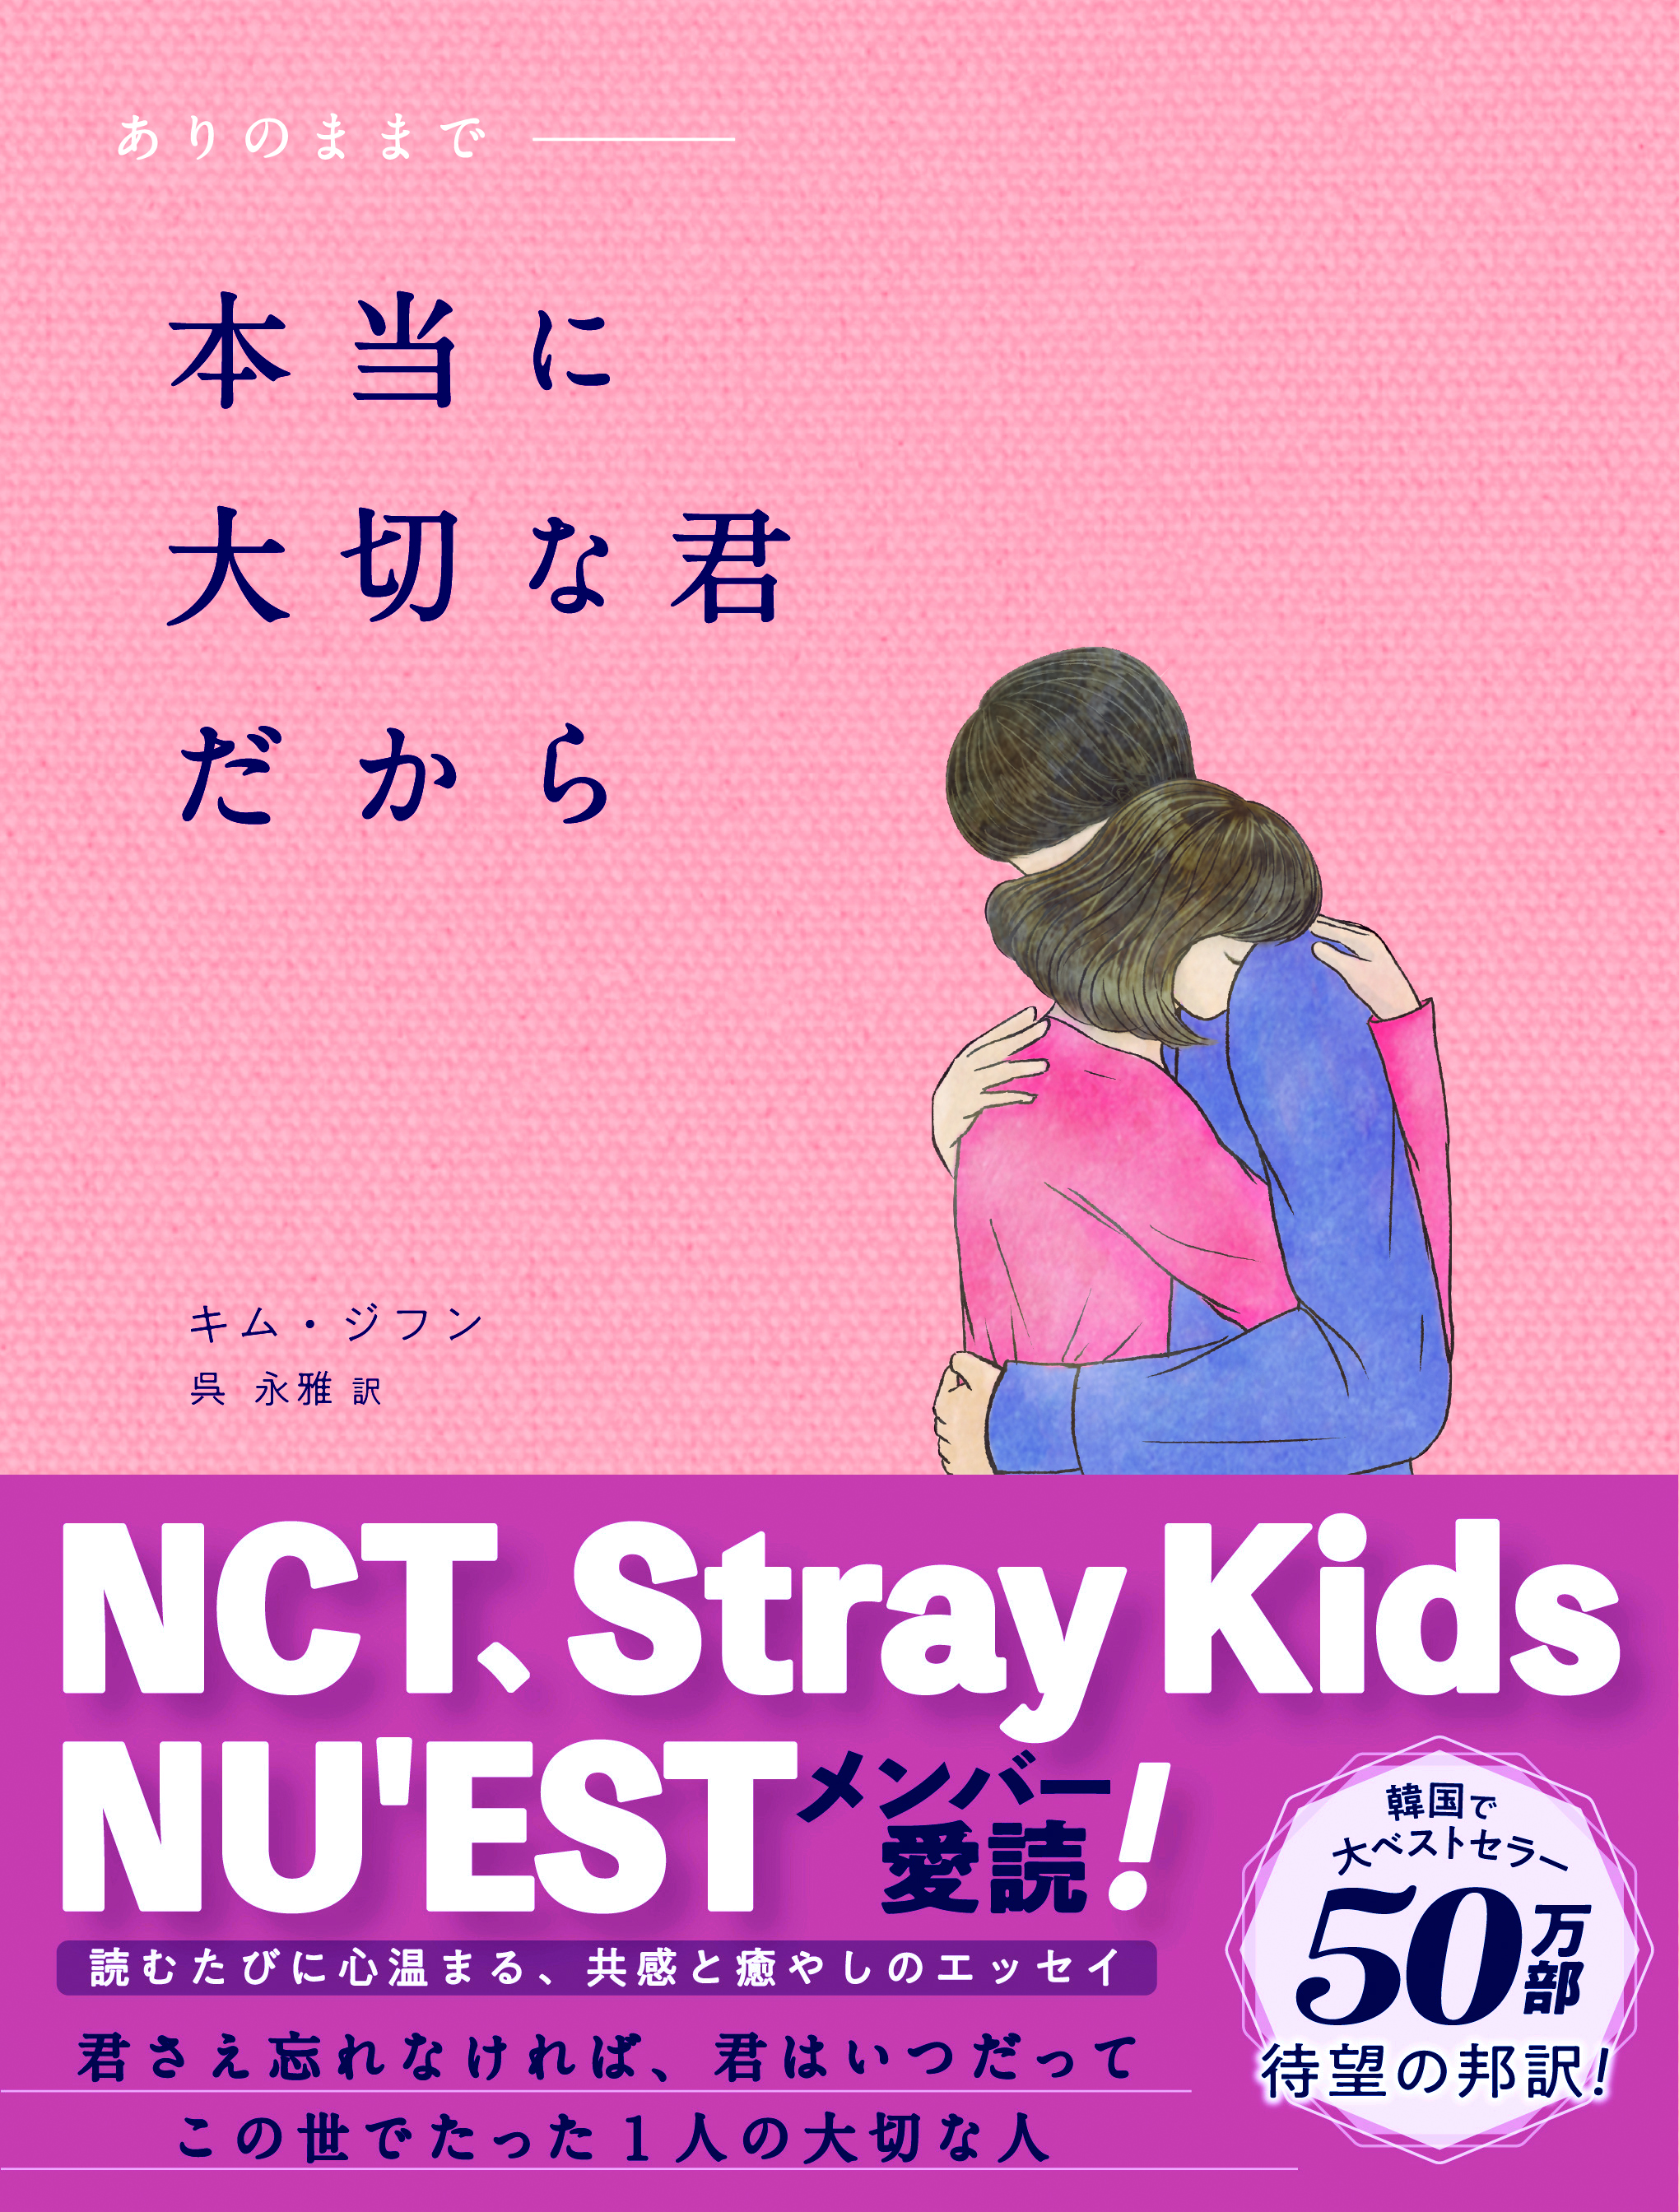 韓国で大ベストセラーの 国民エッセイ がついに日本上陸 Nct Stray Kids 元iz Oneほか名だたる韓国スターたちの愛読書は 自分を愛するためのメッセージが満載 Newscast